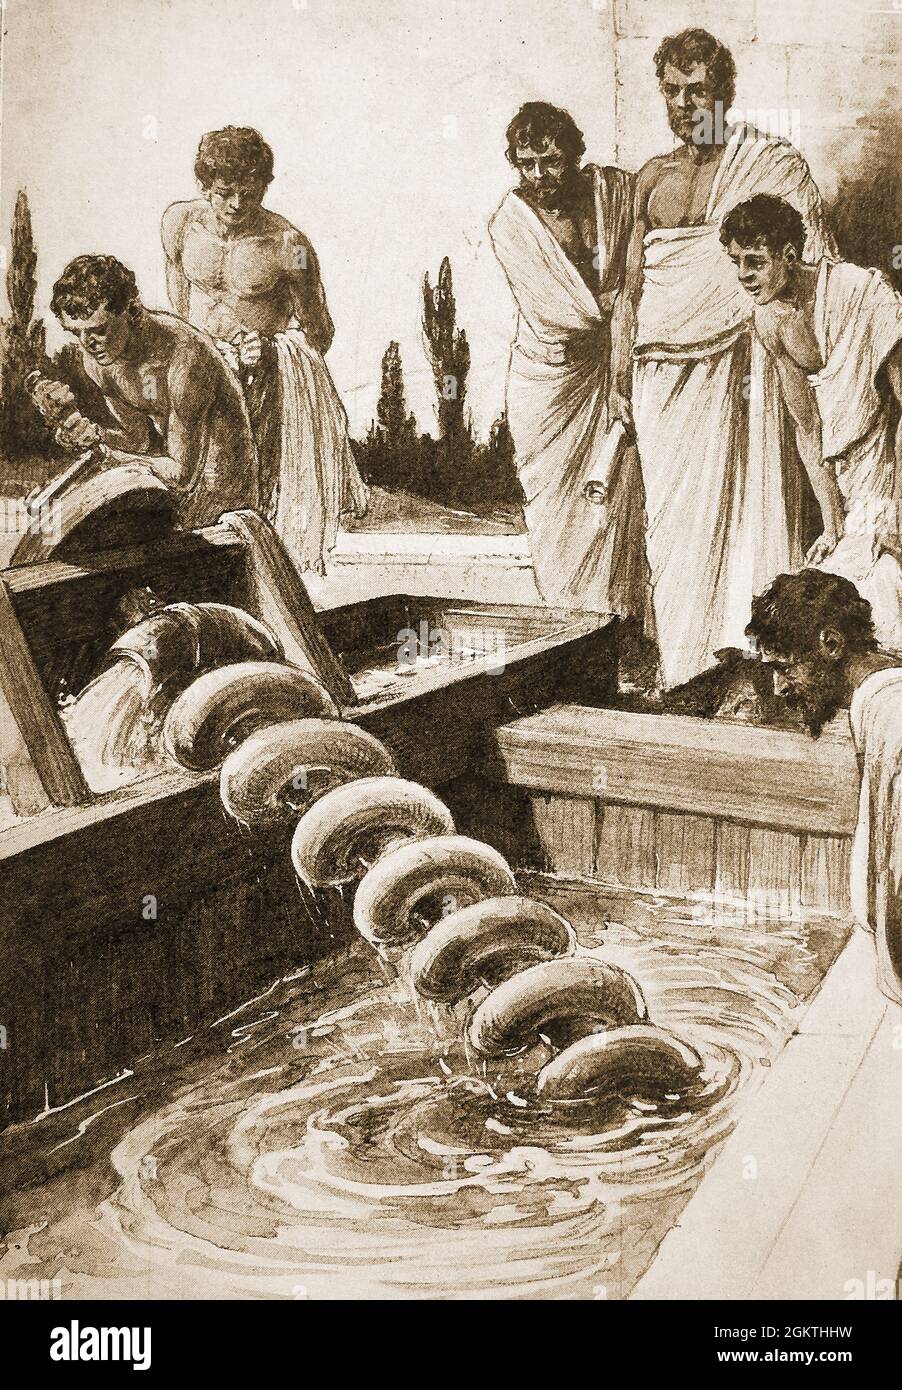 Eine Illustration aus den 1930er Jahren, die zeigt, dass eine Archimedes-Spiralschraube verwendet wird, um den Frachtraum eines Schiffes mit Wasser zu leeren. Archimedes aka Archimedes von Syrakus ( ca. 287-212 v. Chr.) war ein griechischer Mathematiker, Physiker, Ingenieur, Astronom und Erfinder, der für die Erfindung der Archimedes Schraubenpumpe und anderer innovativer technischer Objekte bekannt ist. Er studierte auch Wasserverdrängung, Hebel, Schwerkraft, Riemenscheiben und allgemeine Mechanik. Der Begriff Eureka (ich habe ihn entdeckt) wird Archimedes zugeschrieben Stockfoto